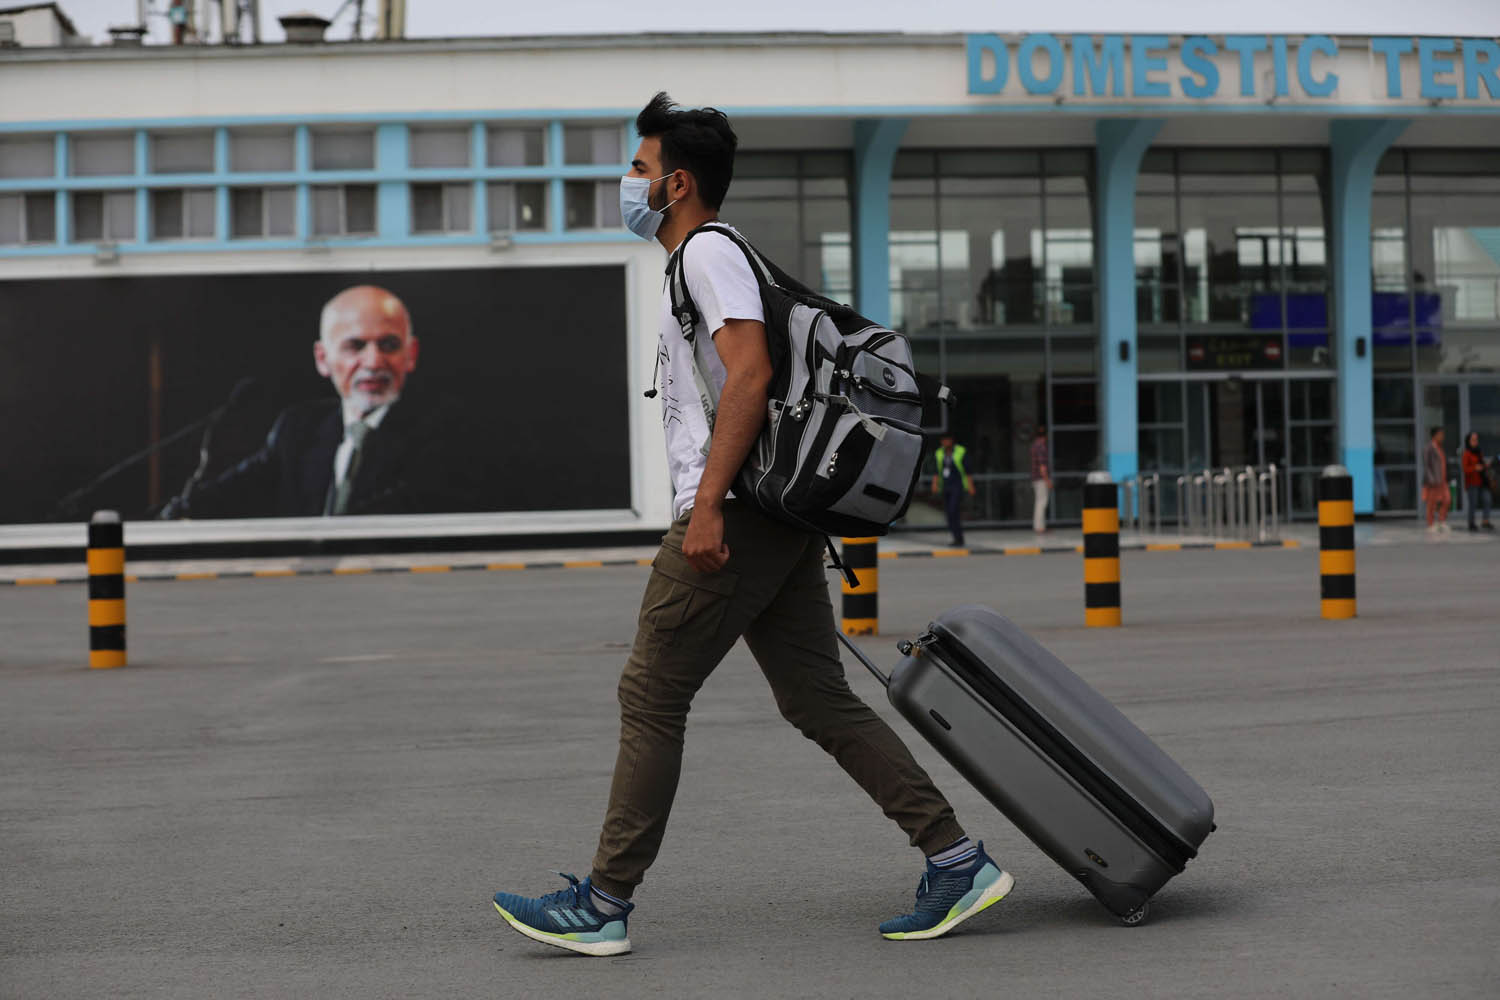 مسافر في مطار حميد كرزاي كابول يستعد للمغادرة